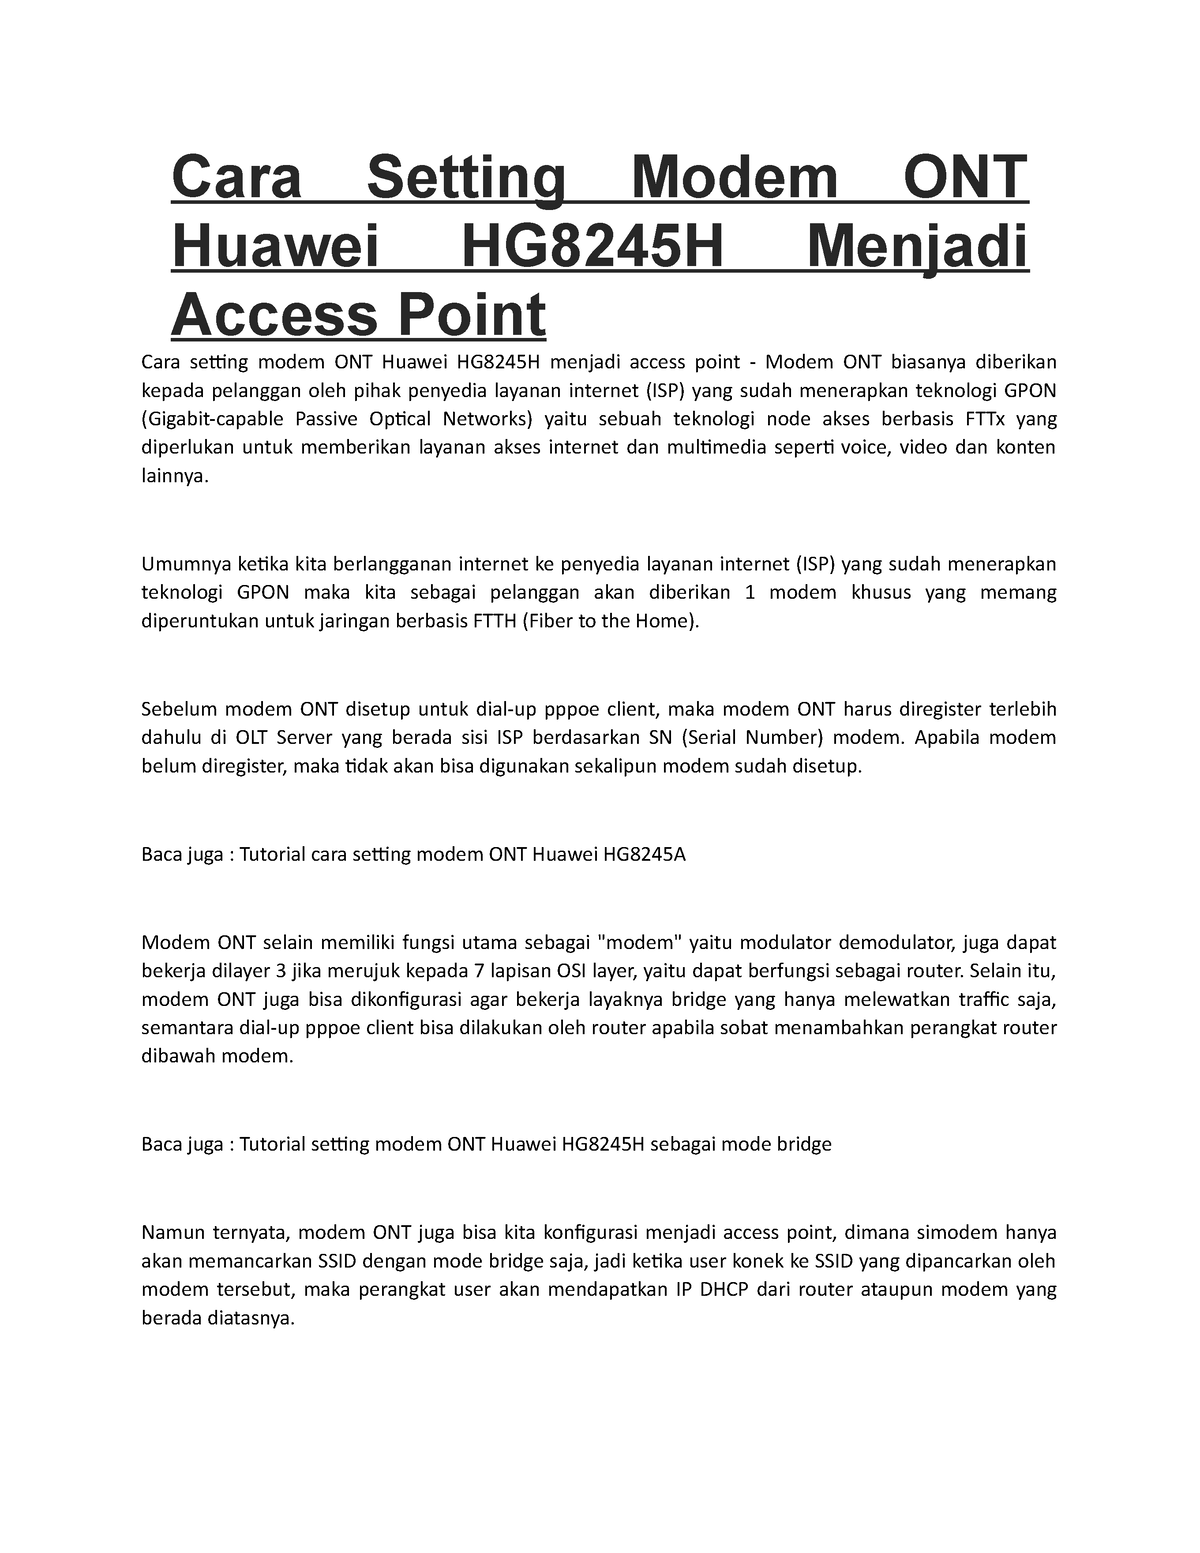 Cara Setting Modem Ont Huawei Hg8245h Menjadi Access Point Cara Setting Modem Ont Huawei 5261